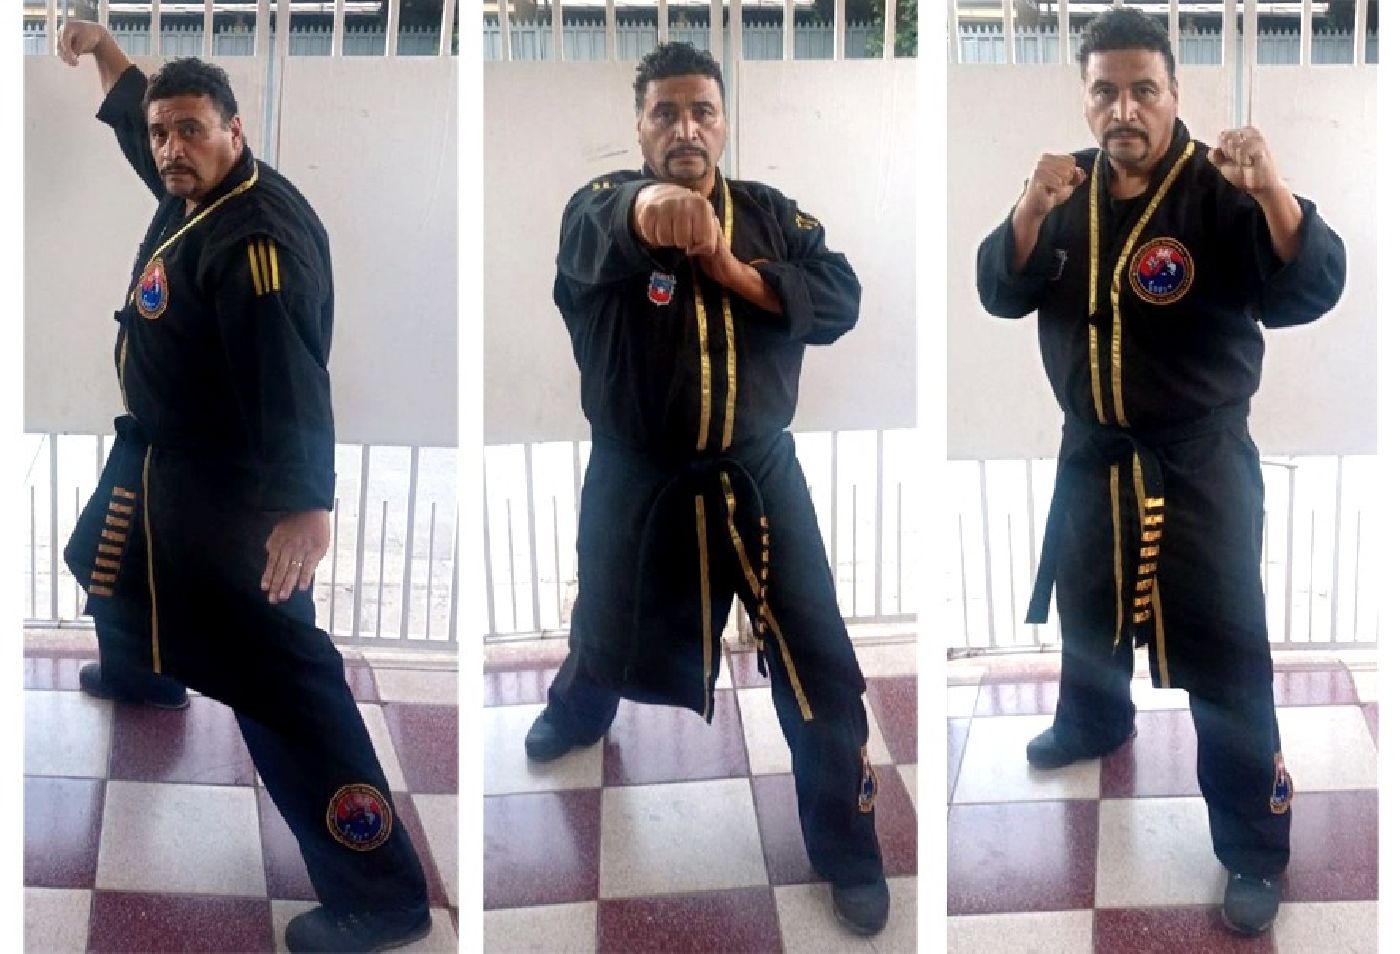 Recomiendan a alumnos práctica de artes  marciales para equilibrar mente y cuerpo